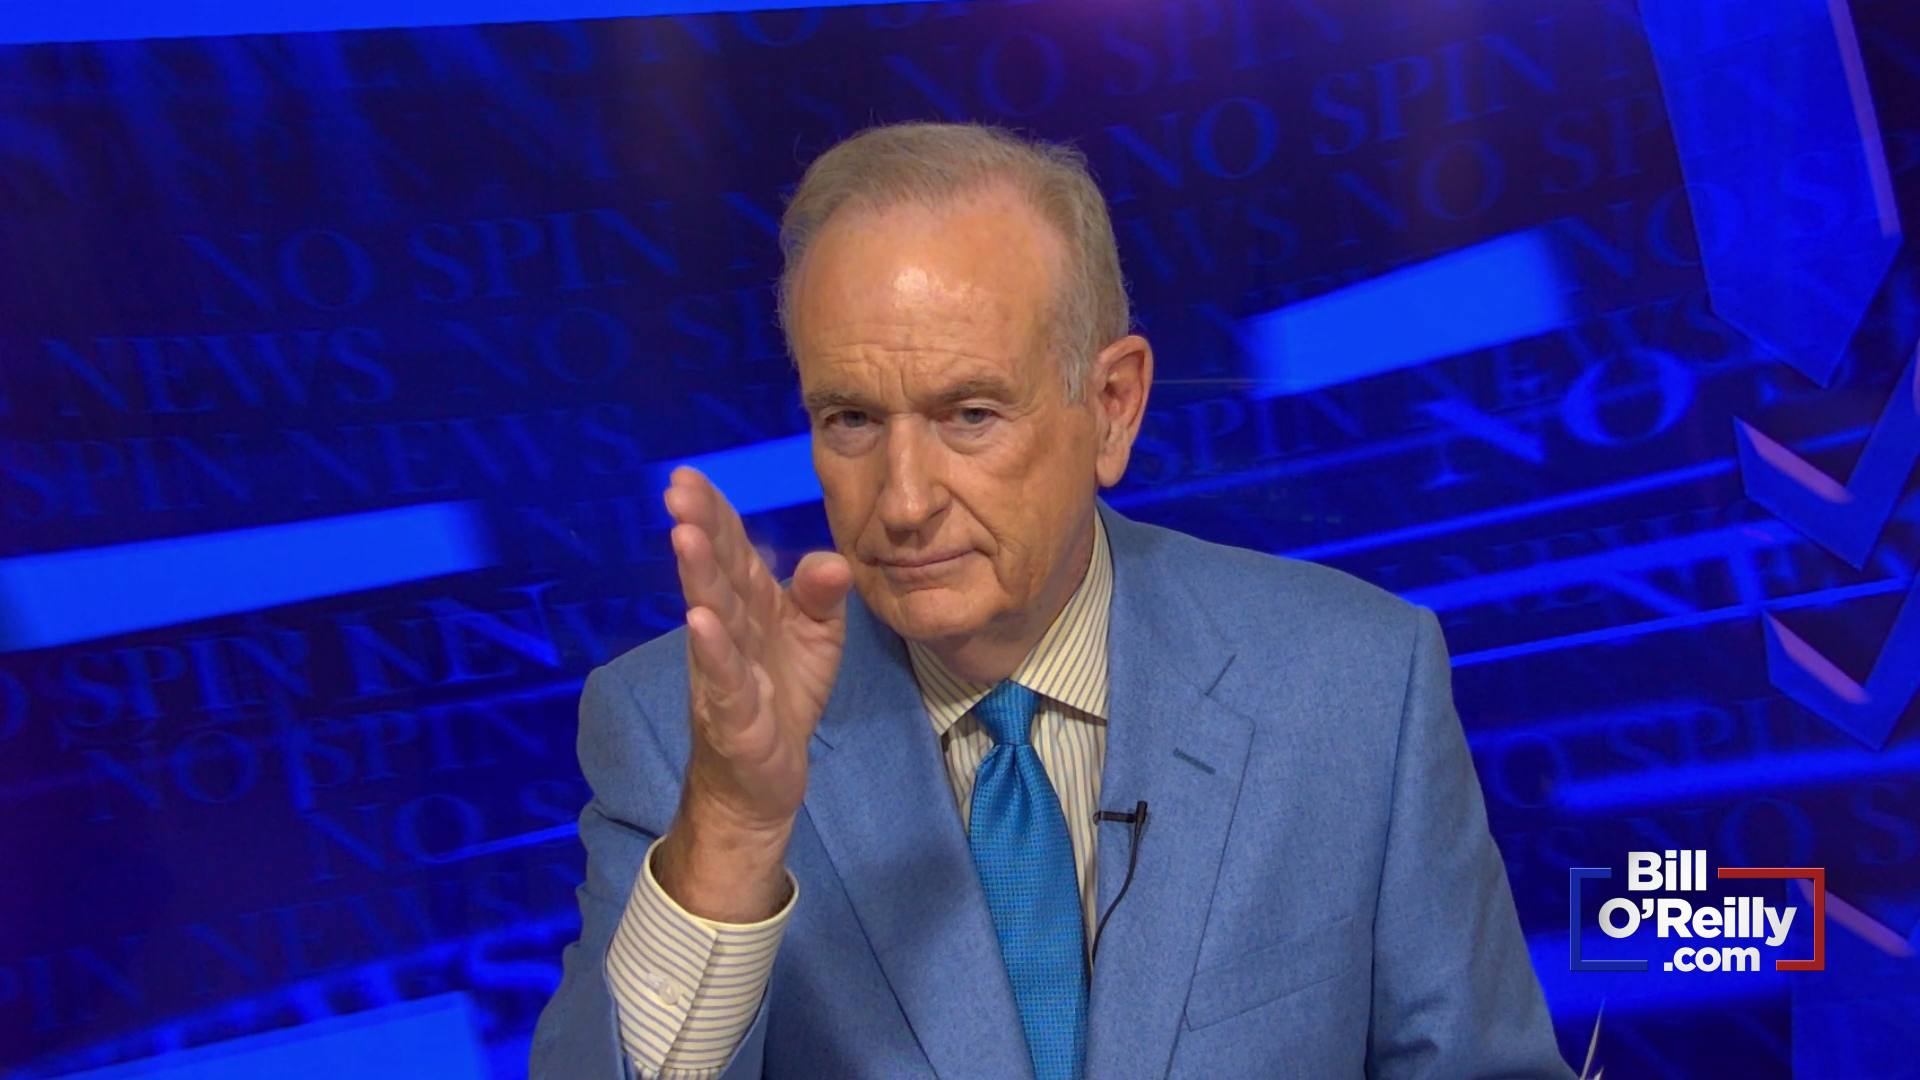 O'Reilly: Joe Biden is a Bad Guy